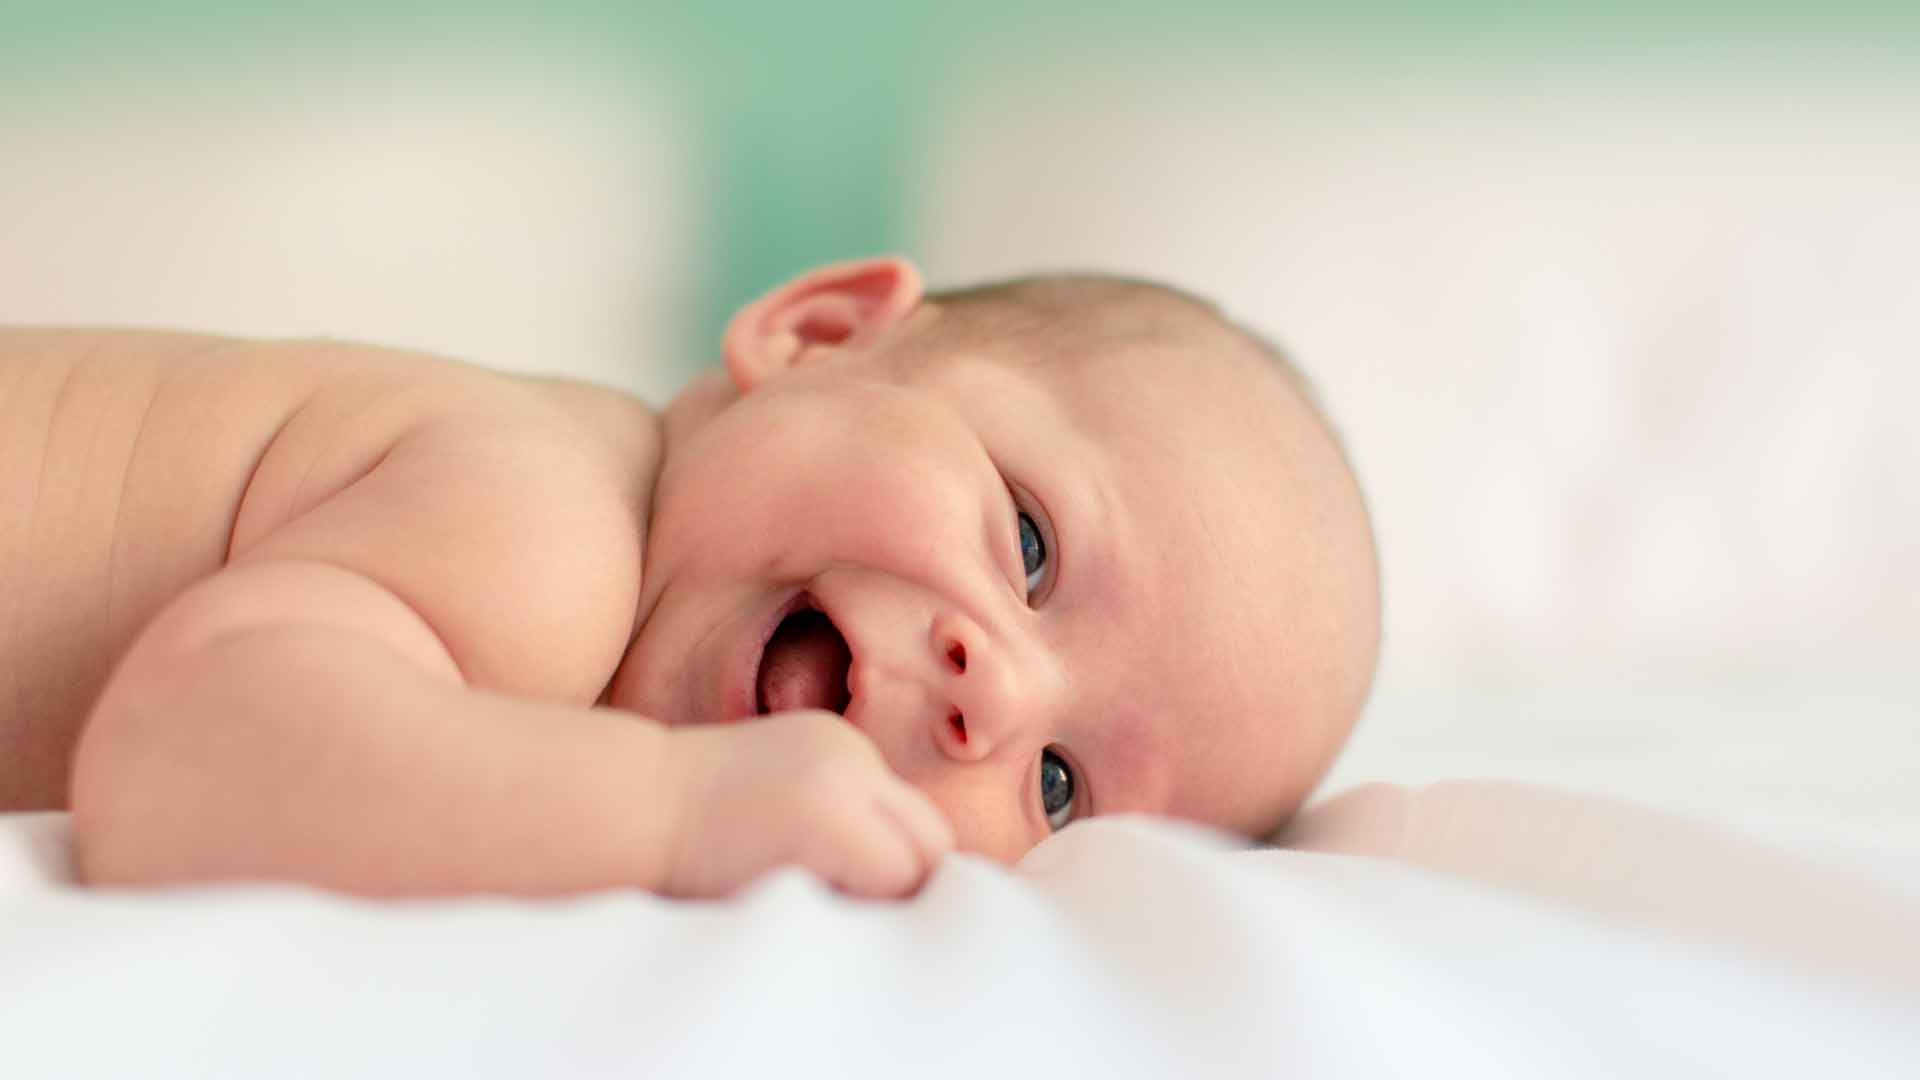 La caída de la fertilidad en el mundo podría ser positiva, según una investigadora de Oxford